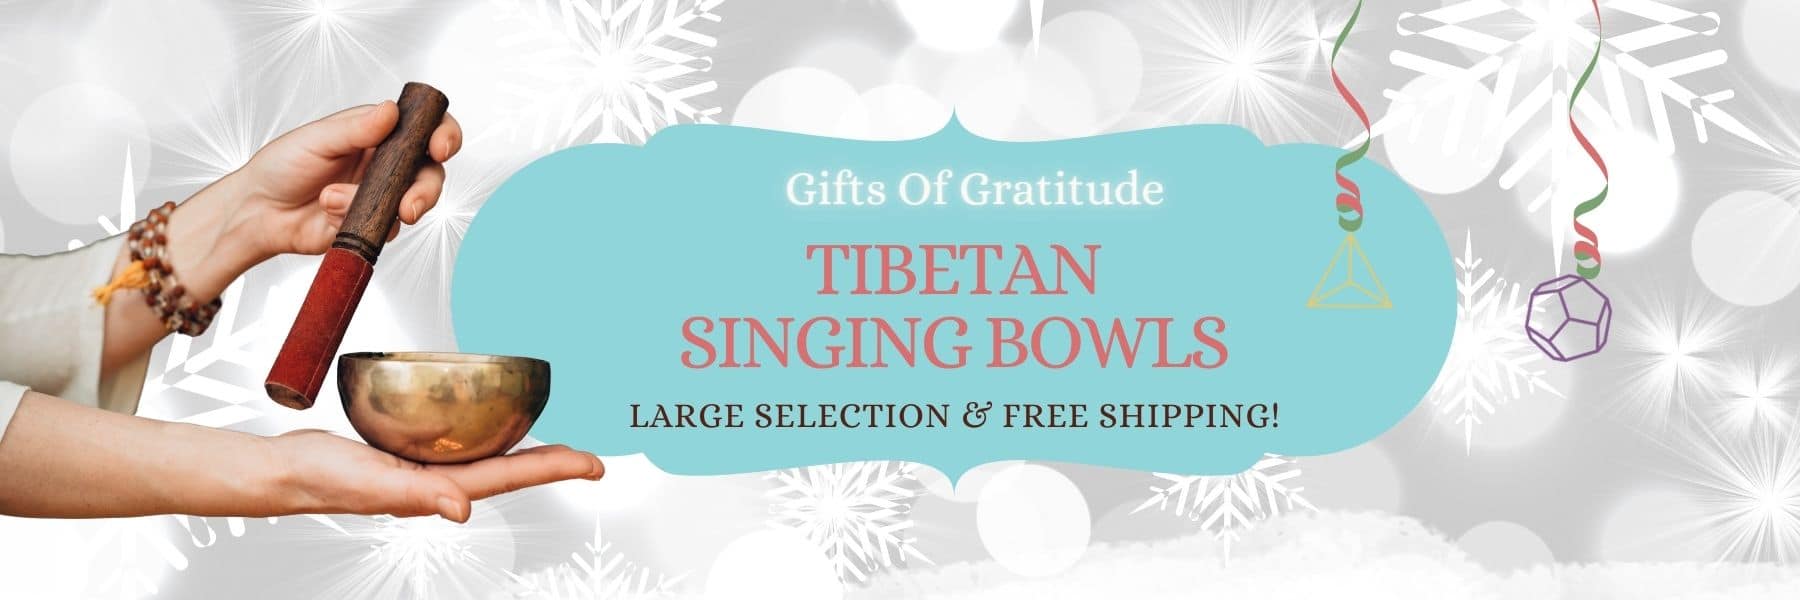 Gift of Gratitude: Tibetan Singing Bowls - Large Selection & Free Shipping!